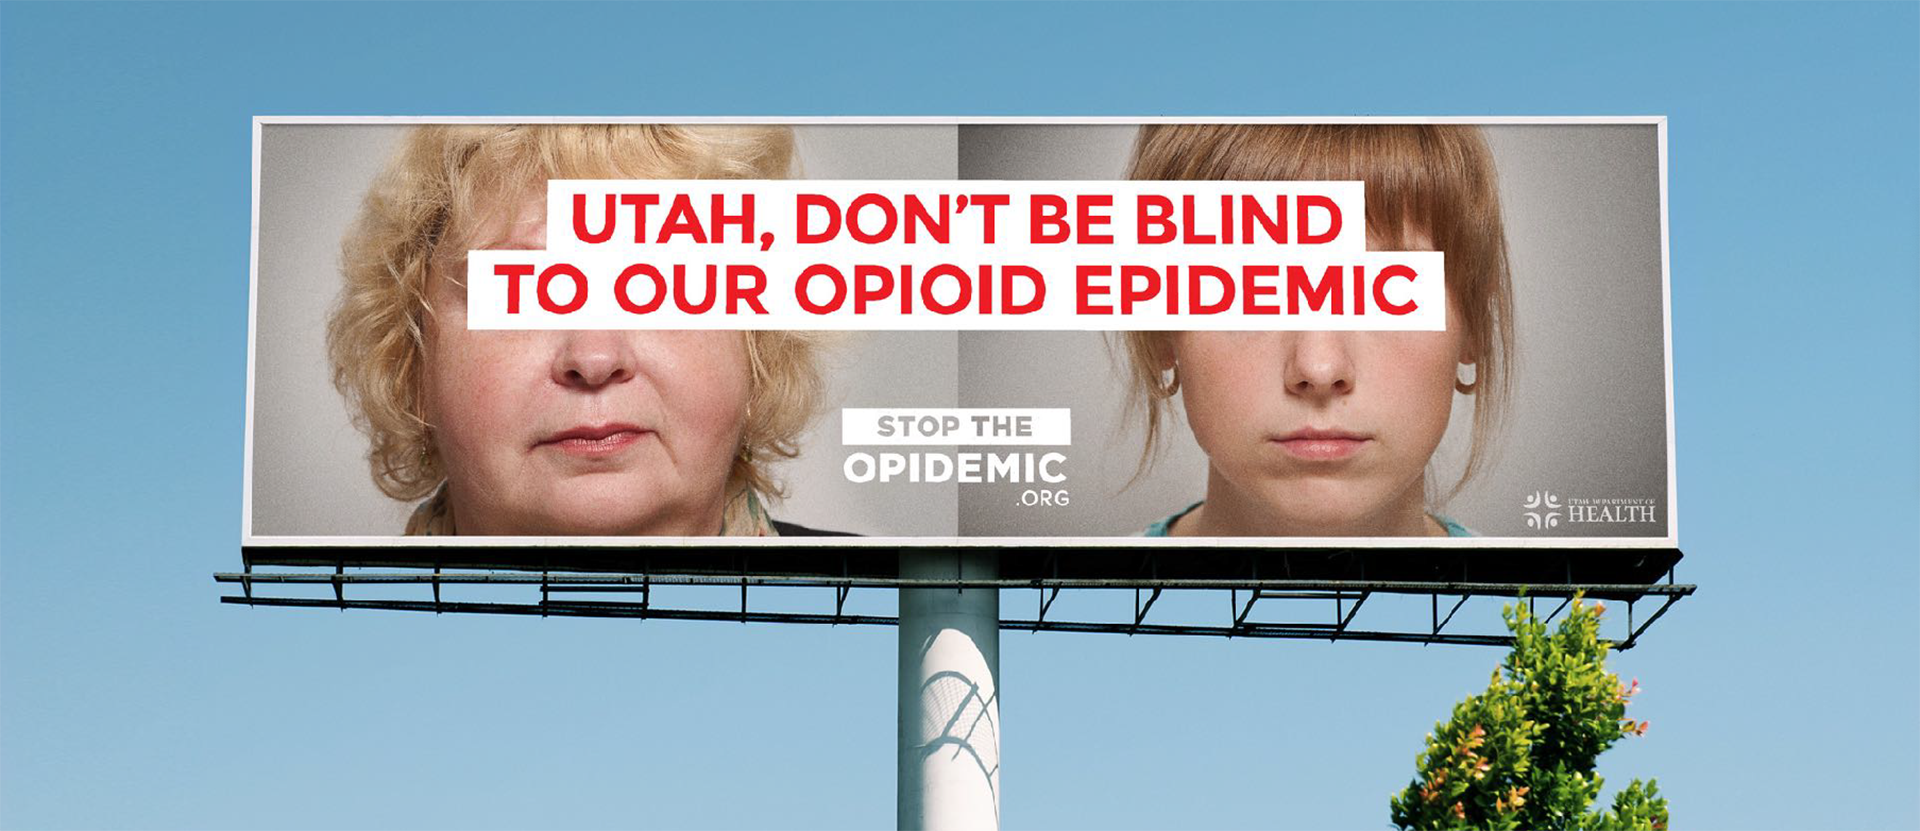 Utah, don't be blind billboard